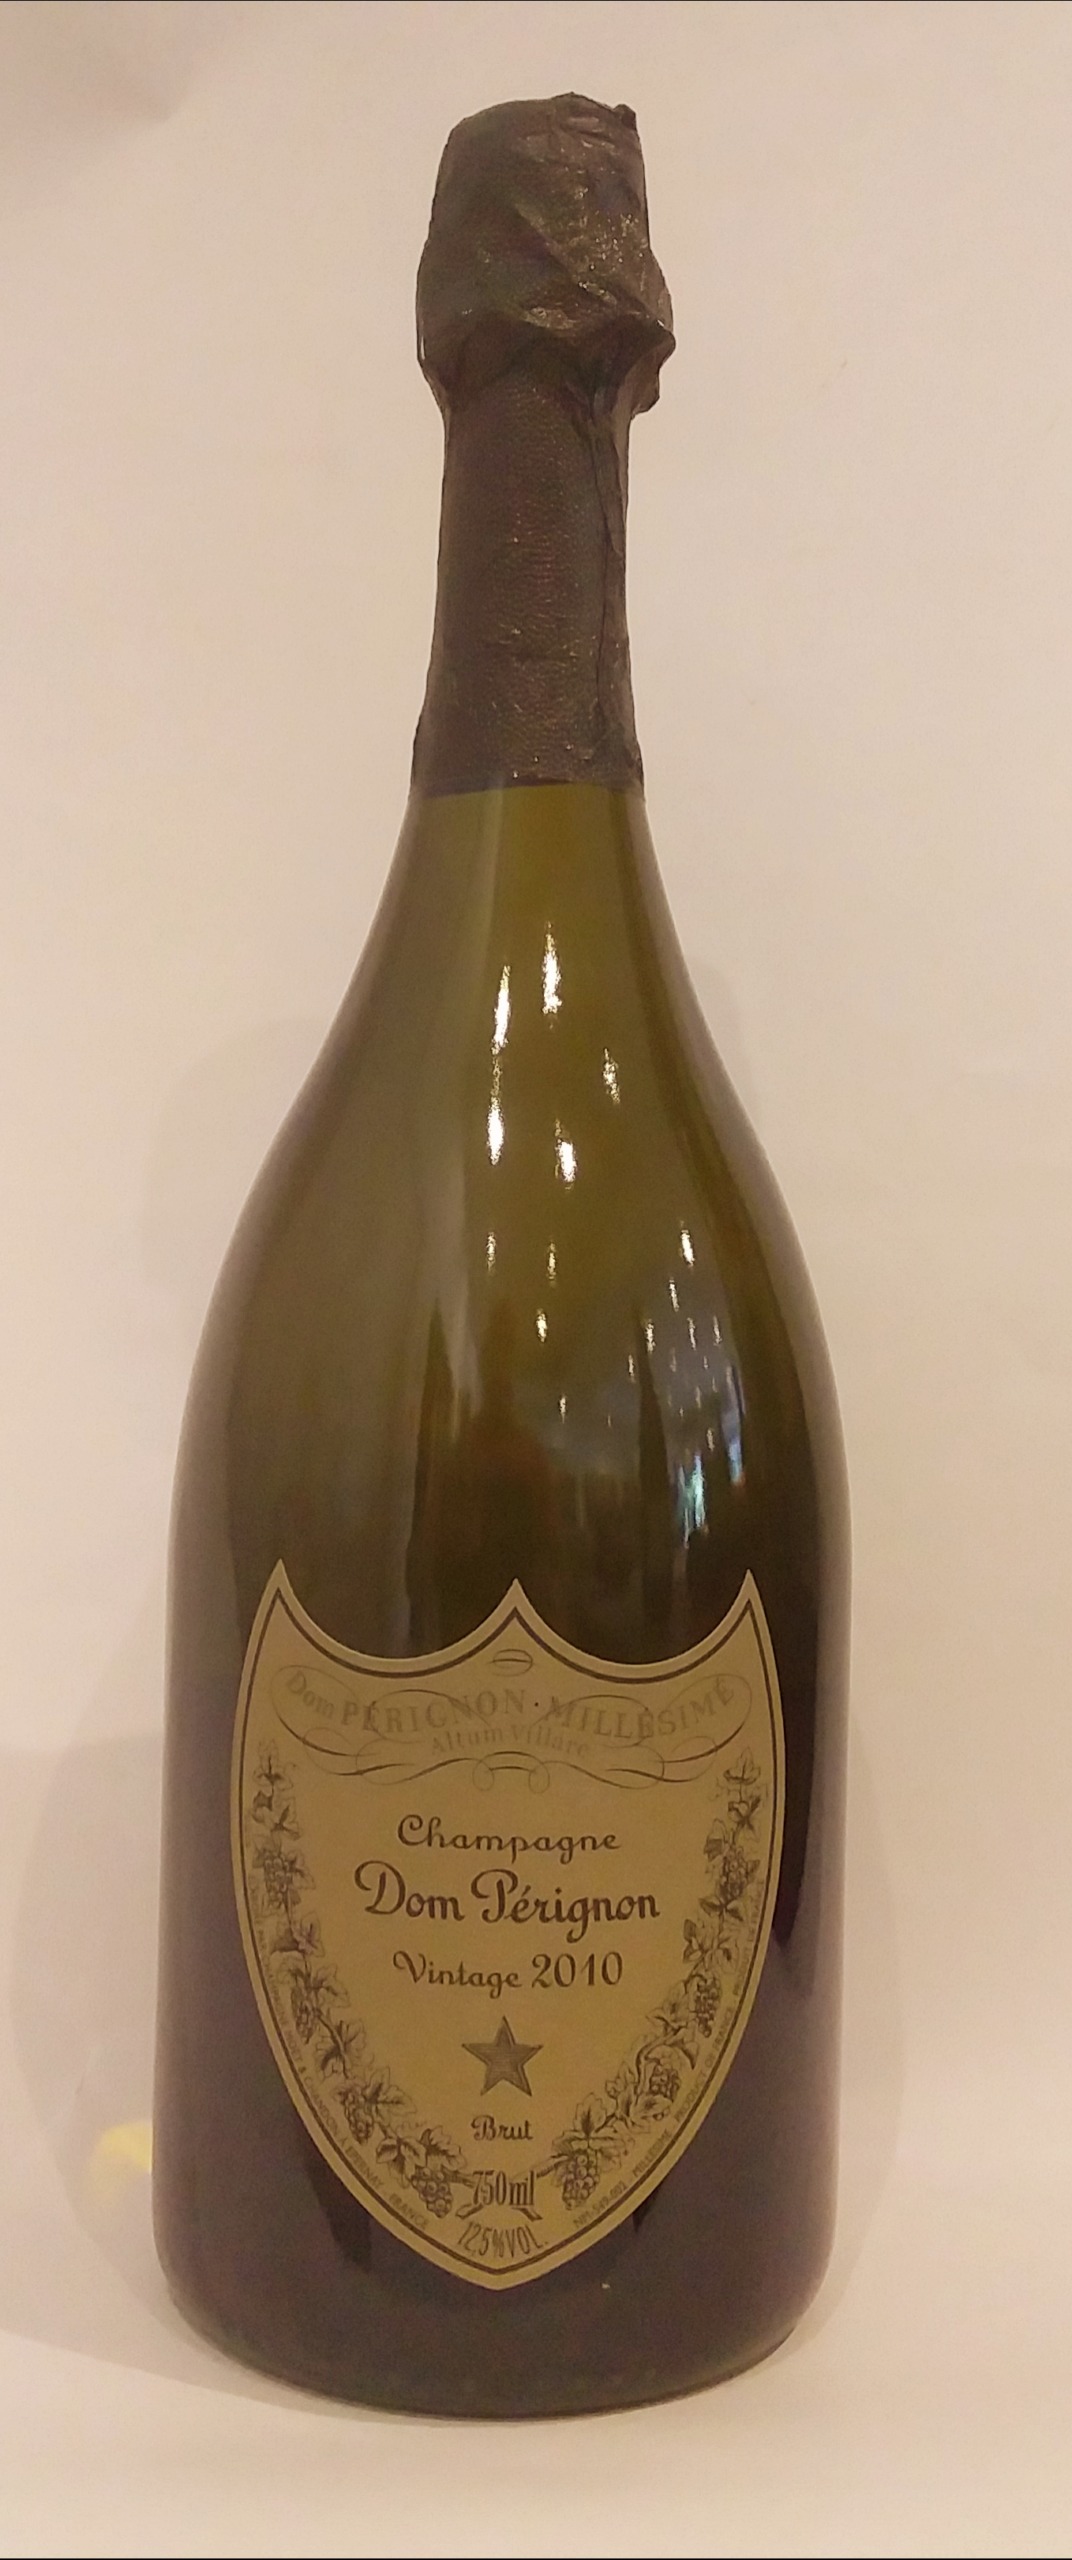 Champagne brut - Domaine Dom Pérignon - Vintage 2012